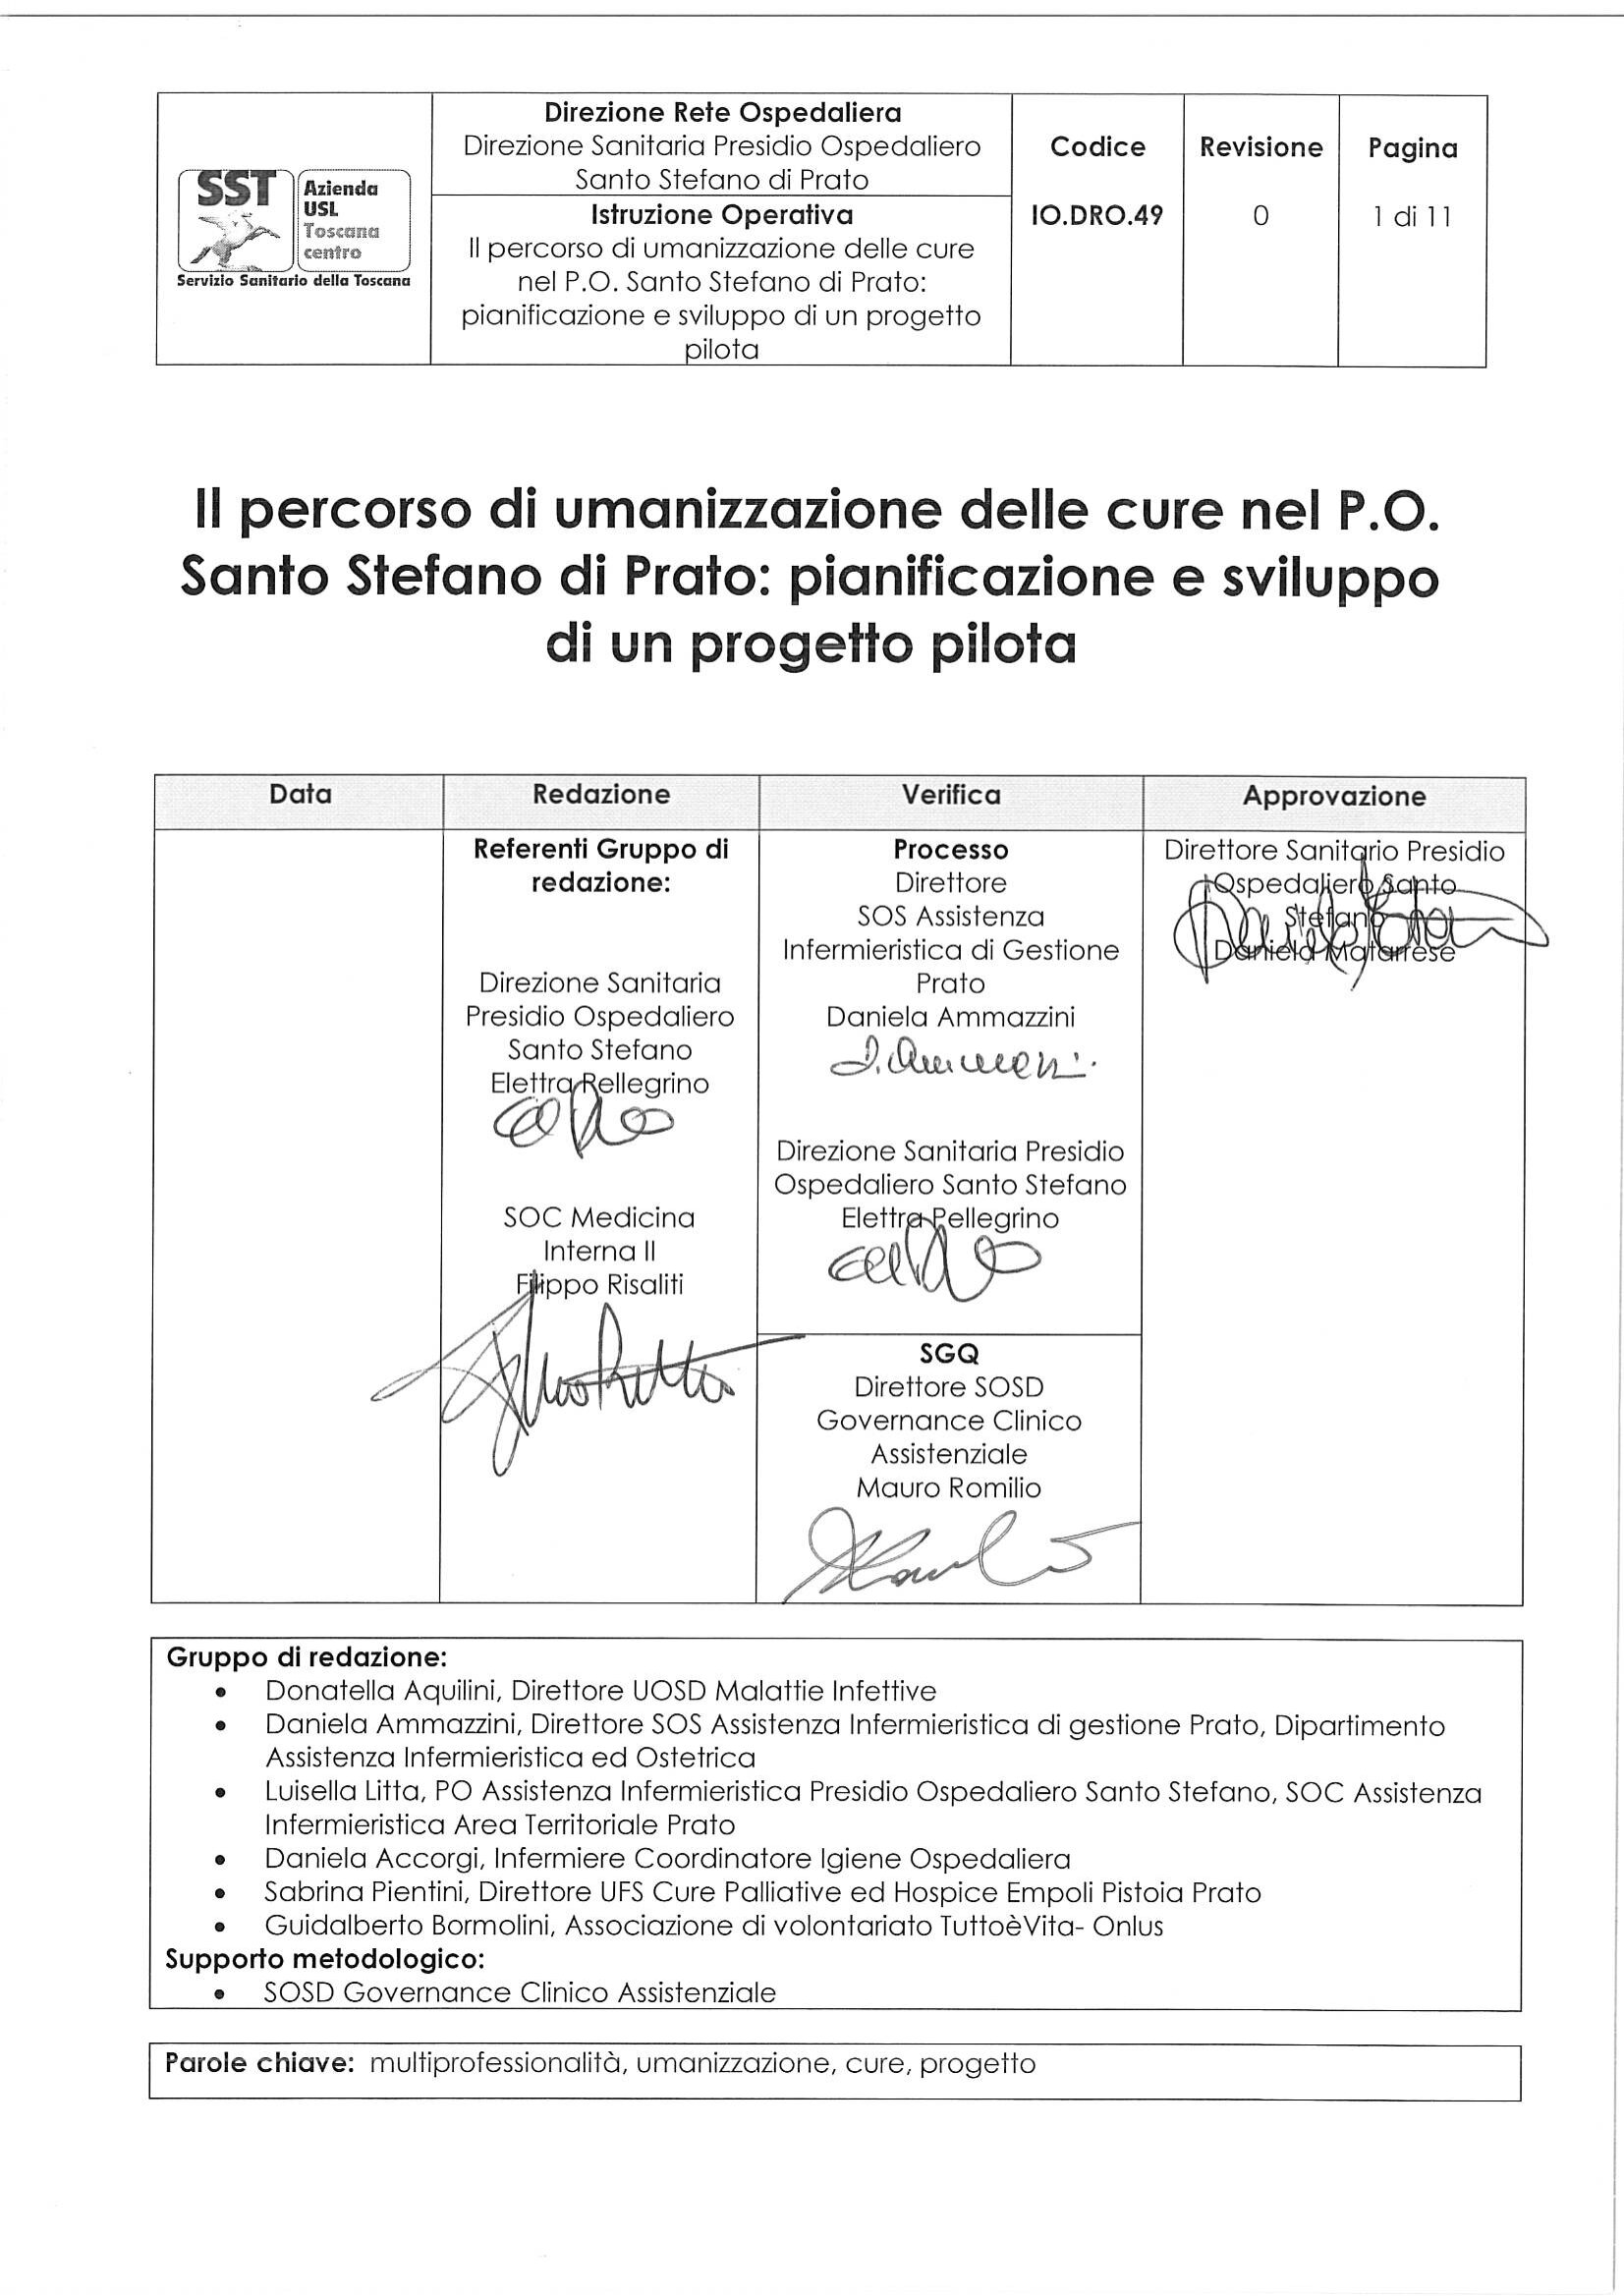 IO.DRO.49 Il percorso di umanizzazione delle cure nel P.O. Santo Stefano di Prato: pianificazione e sviluppo di un progetto pilota